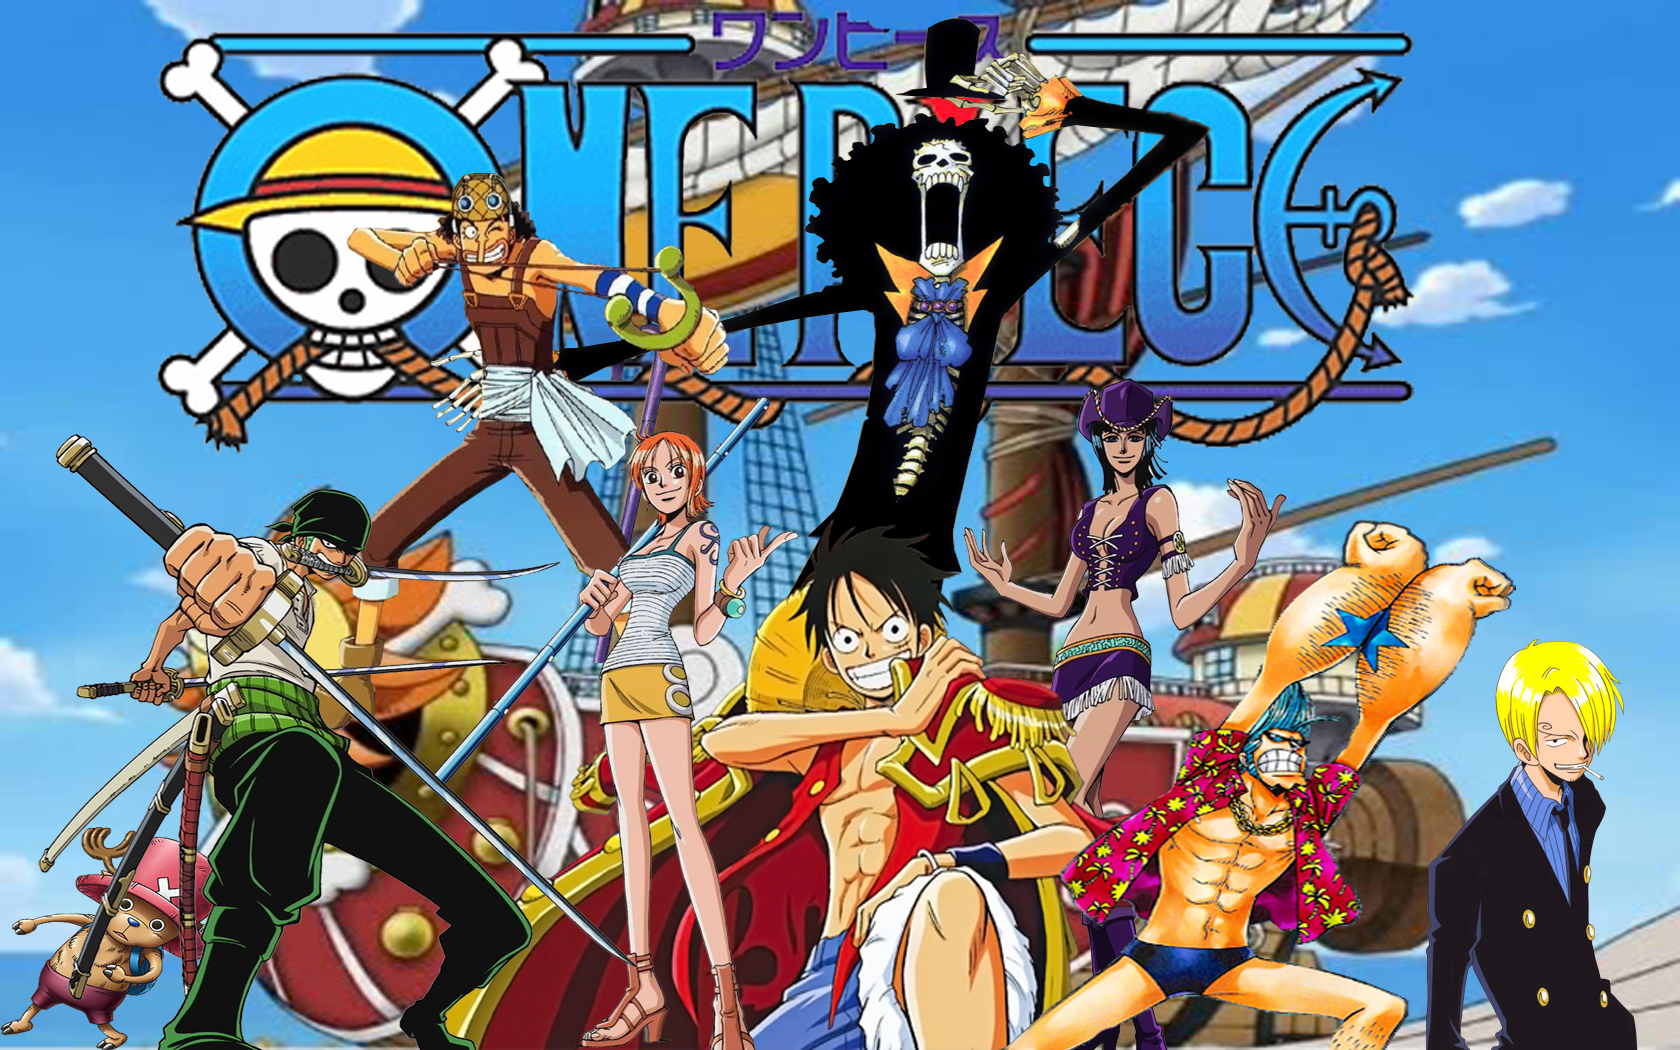 Káº¿t quáº£ hÃ¬nh áº£nh cho One Piece